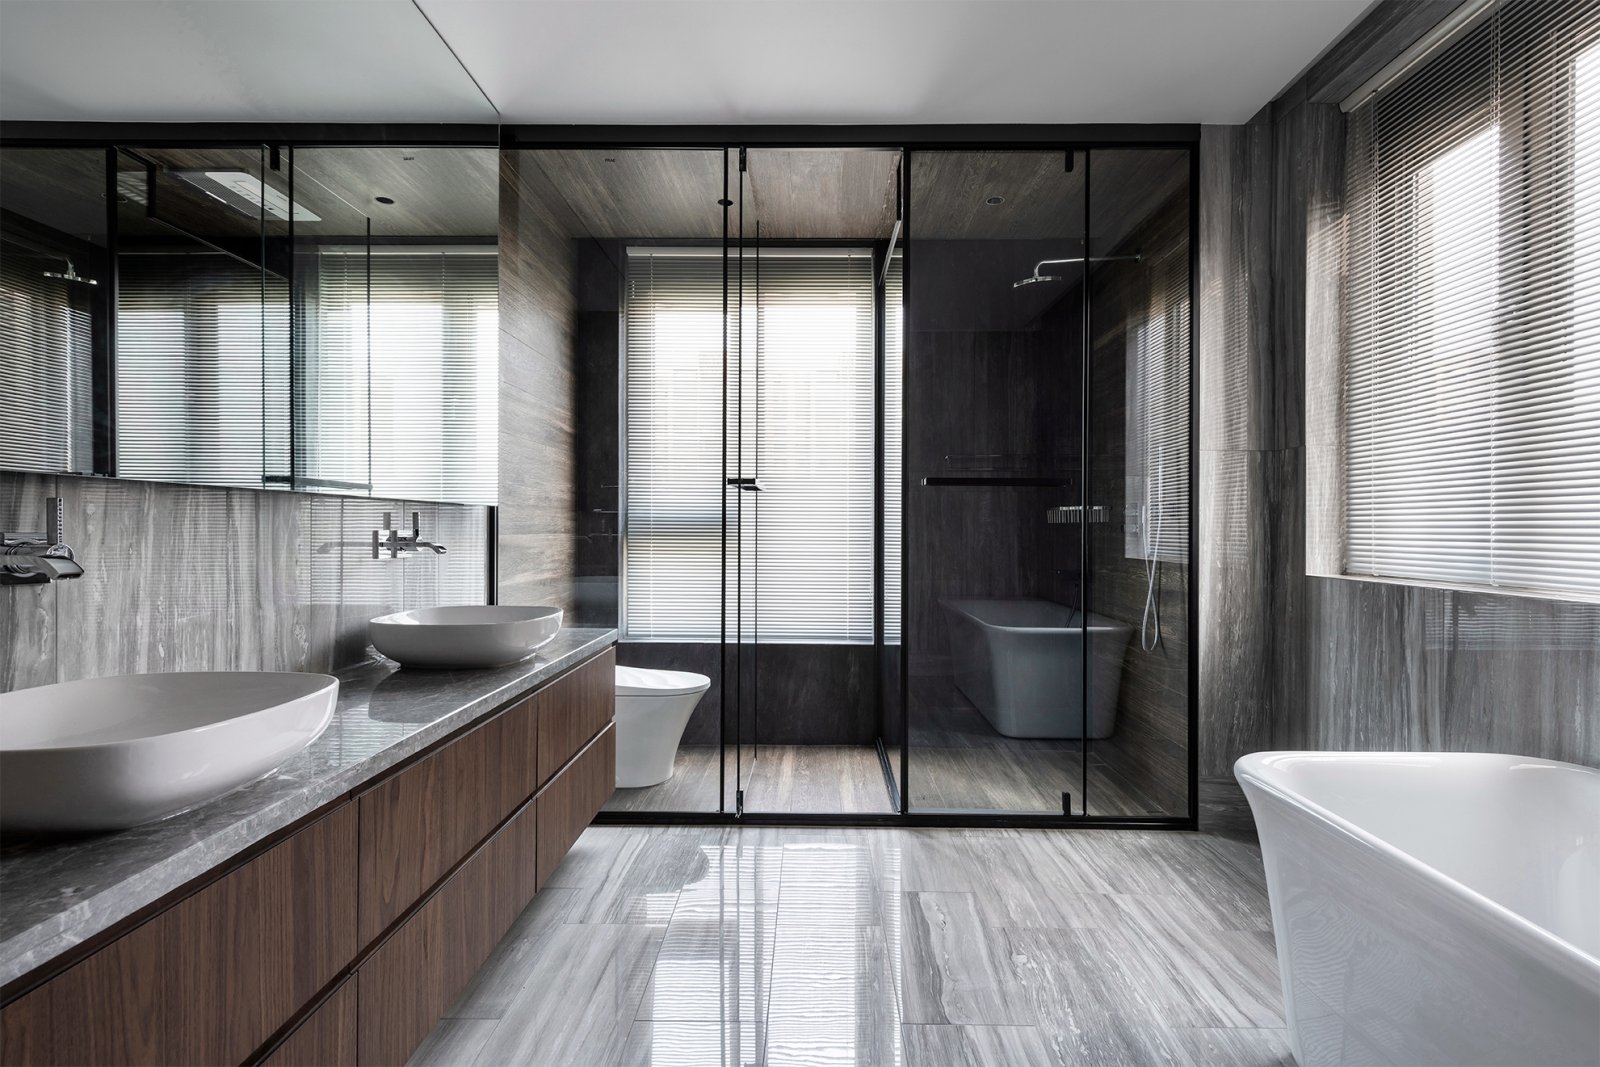 卫浴空间以简雅格调与诗性的笔触，打造出清幽、整洁的空间氛围。